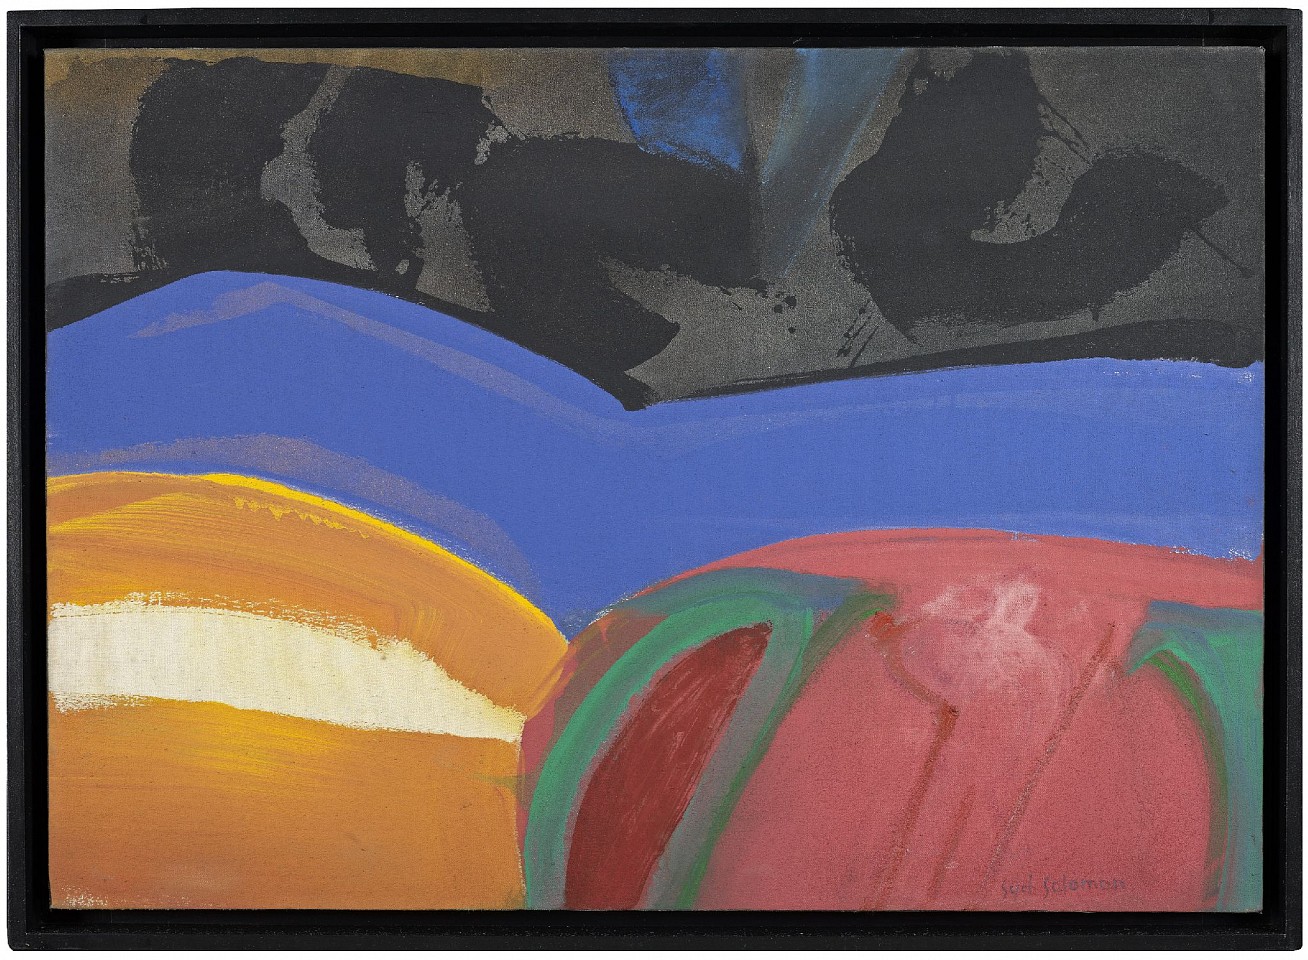 Syd Solomon, Daydrift, 1987
Acrylic and aerosol enamel on canvas, 24 x 34 in. (61 x 86.4 cm)
© Estate of Syd Solomon
SOL-00022